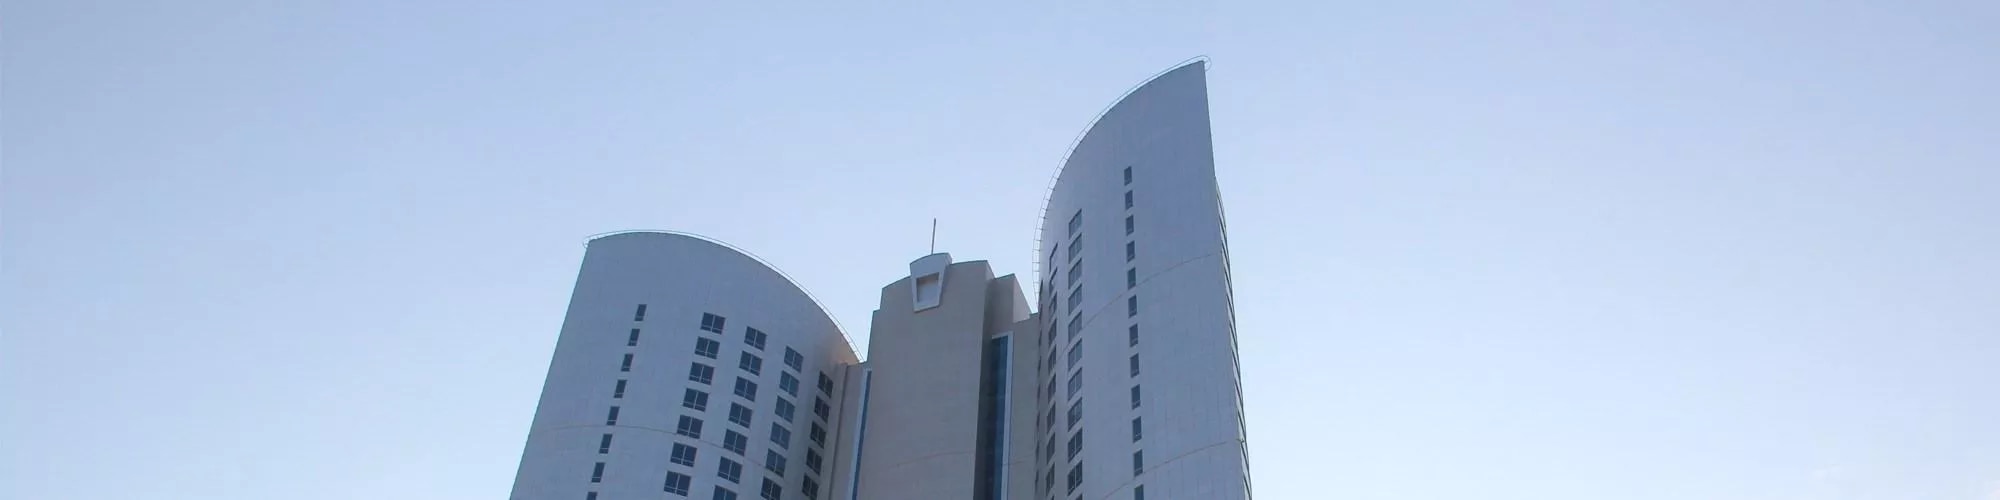 diplomatic-commercial-office-tower-bahrain-banner-1.jpg